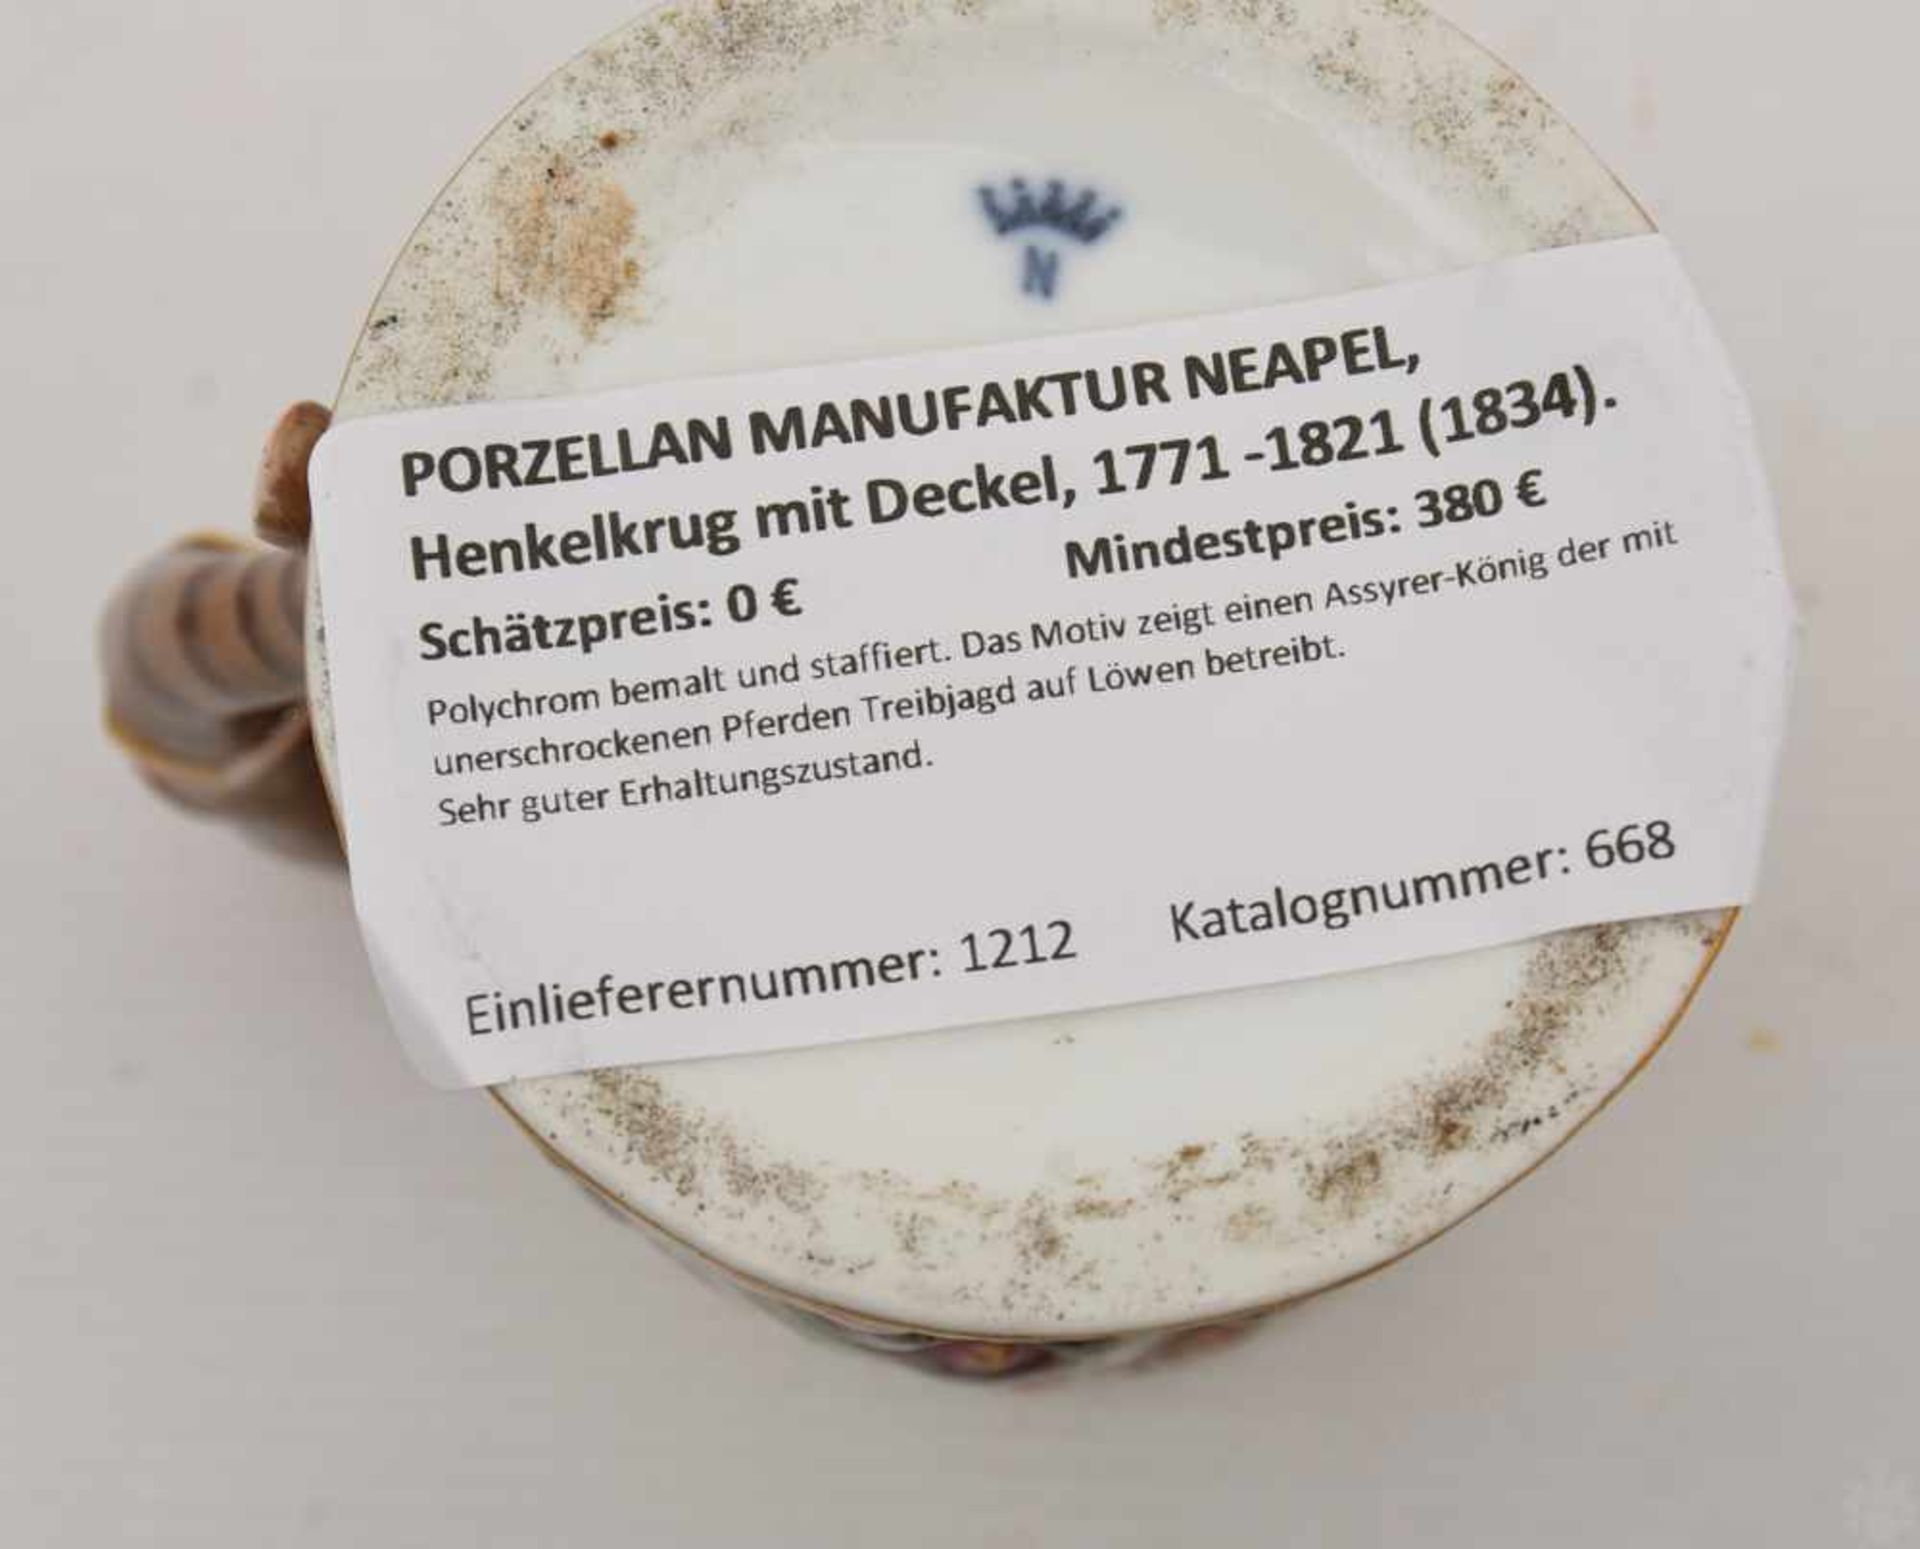 PORZELLAN MANUFAKTUR NEAPEL, Henkelkrug mit Deckel, 1771 -1821 (1834). Polychrom bemalt und - Image 7 of 7